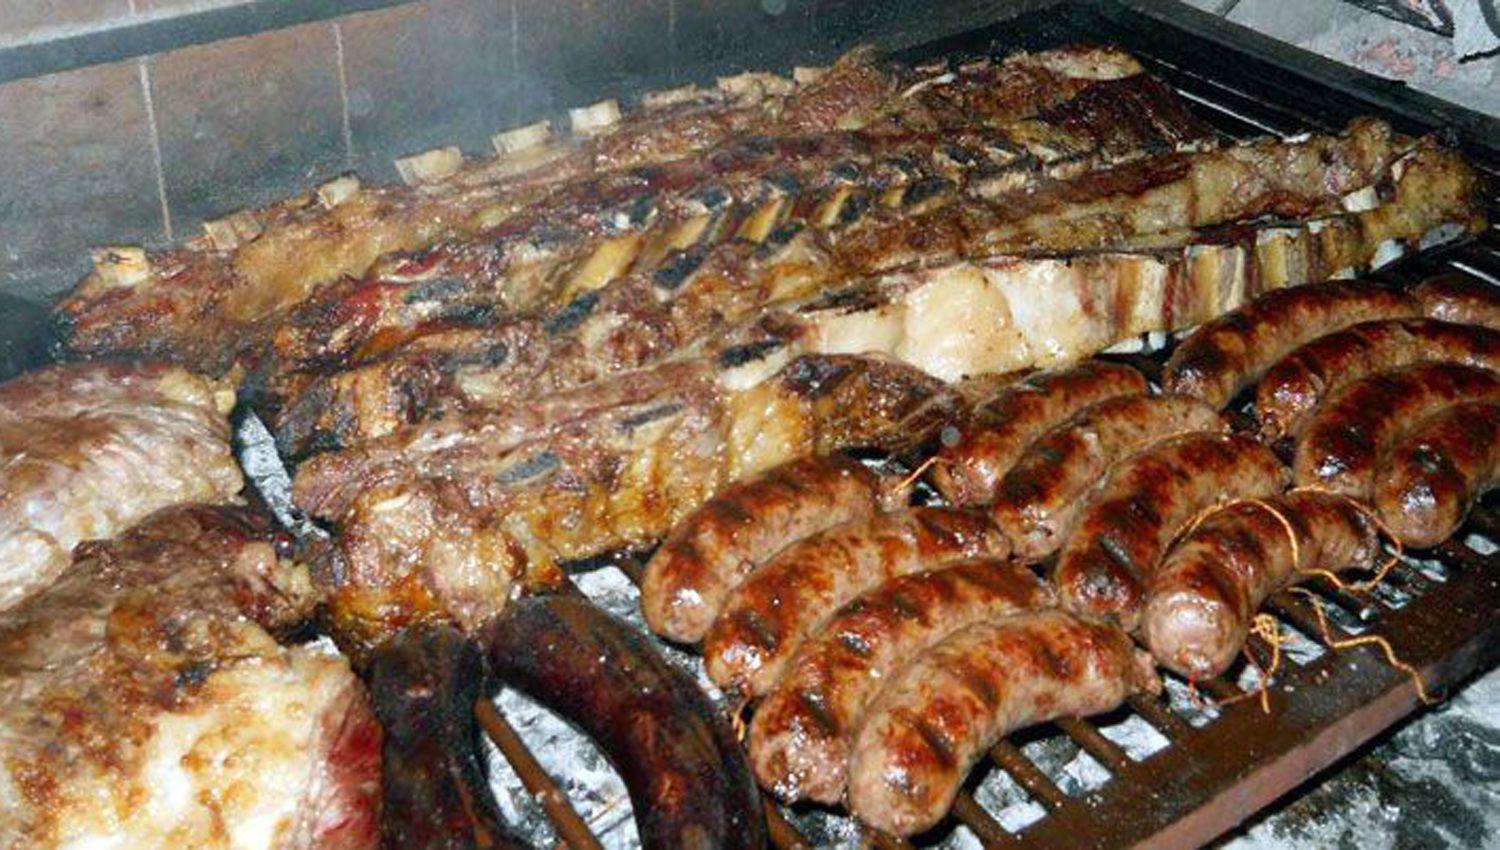 Imparable la carne sigue estando en las preferencias de los argentinos